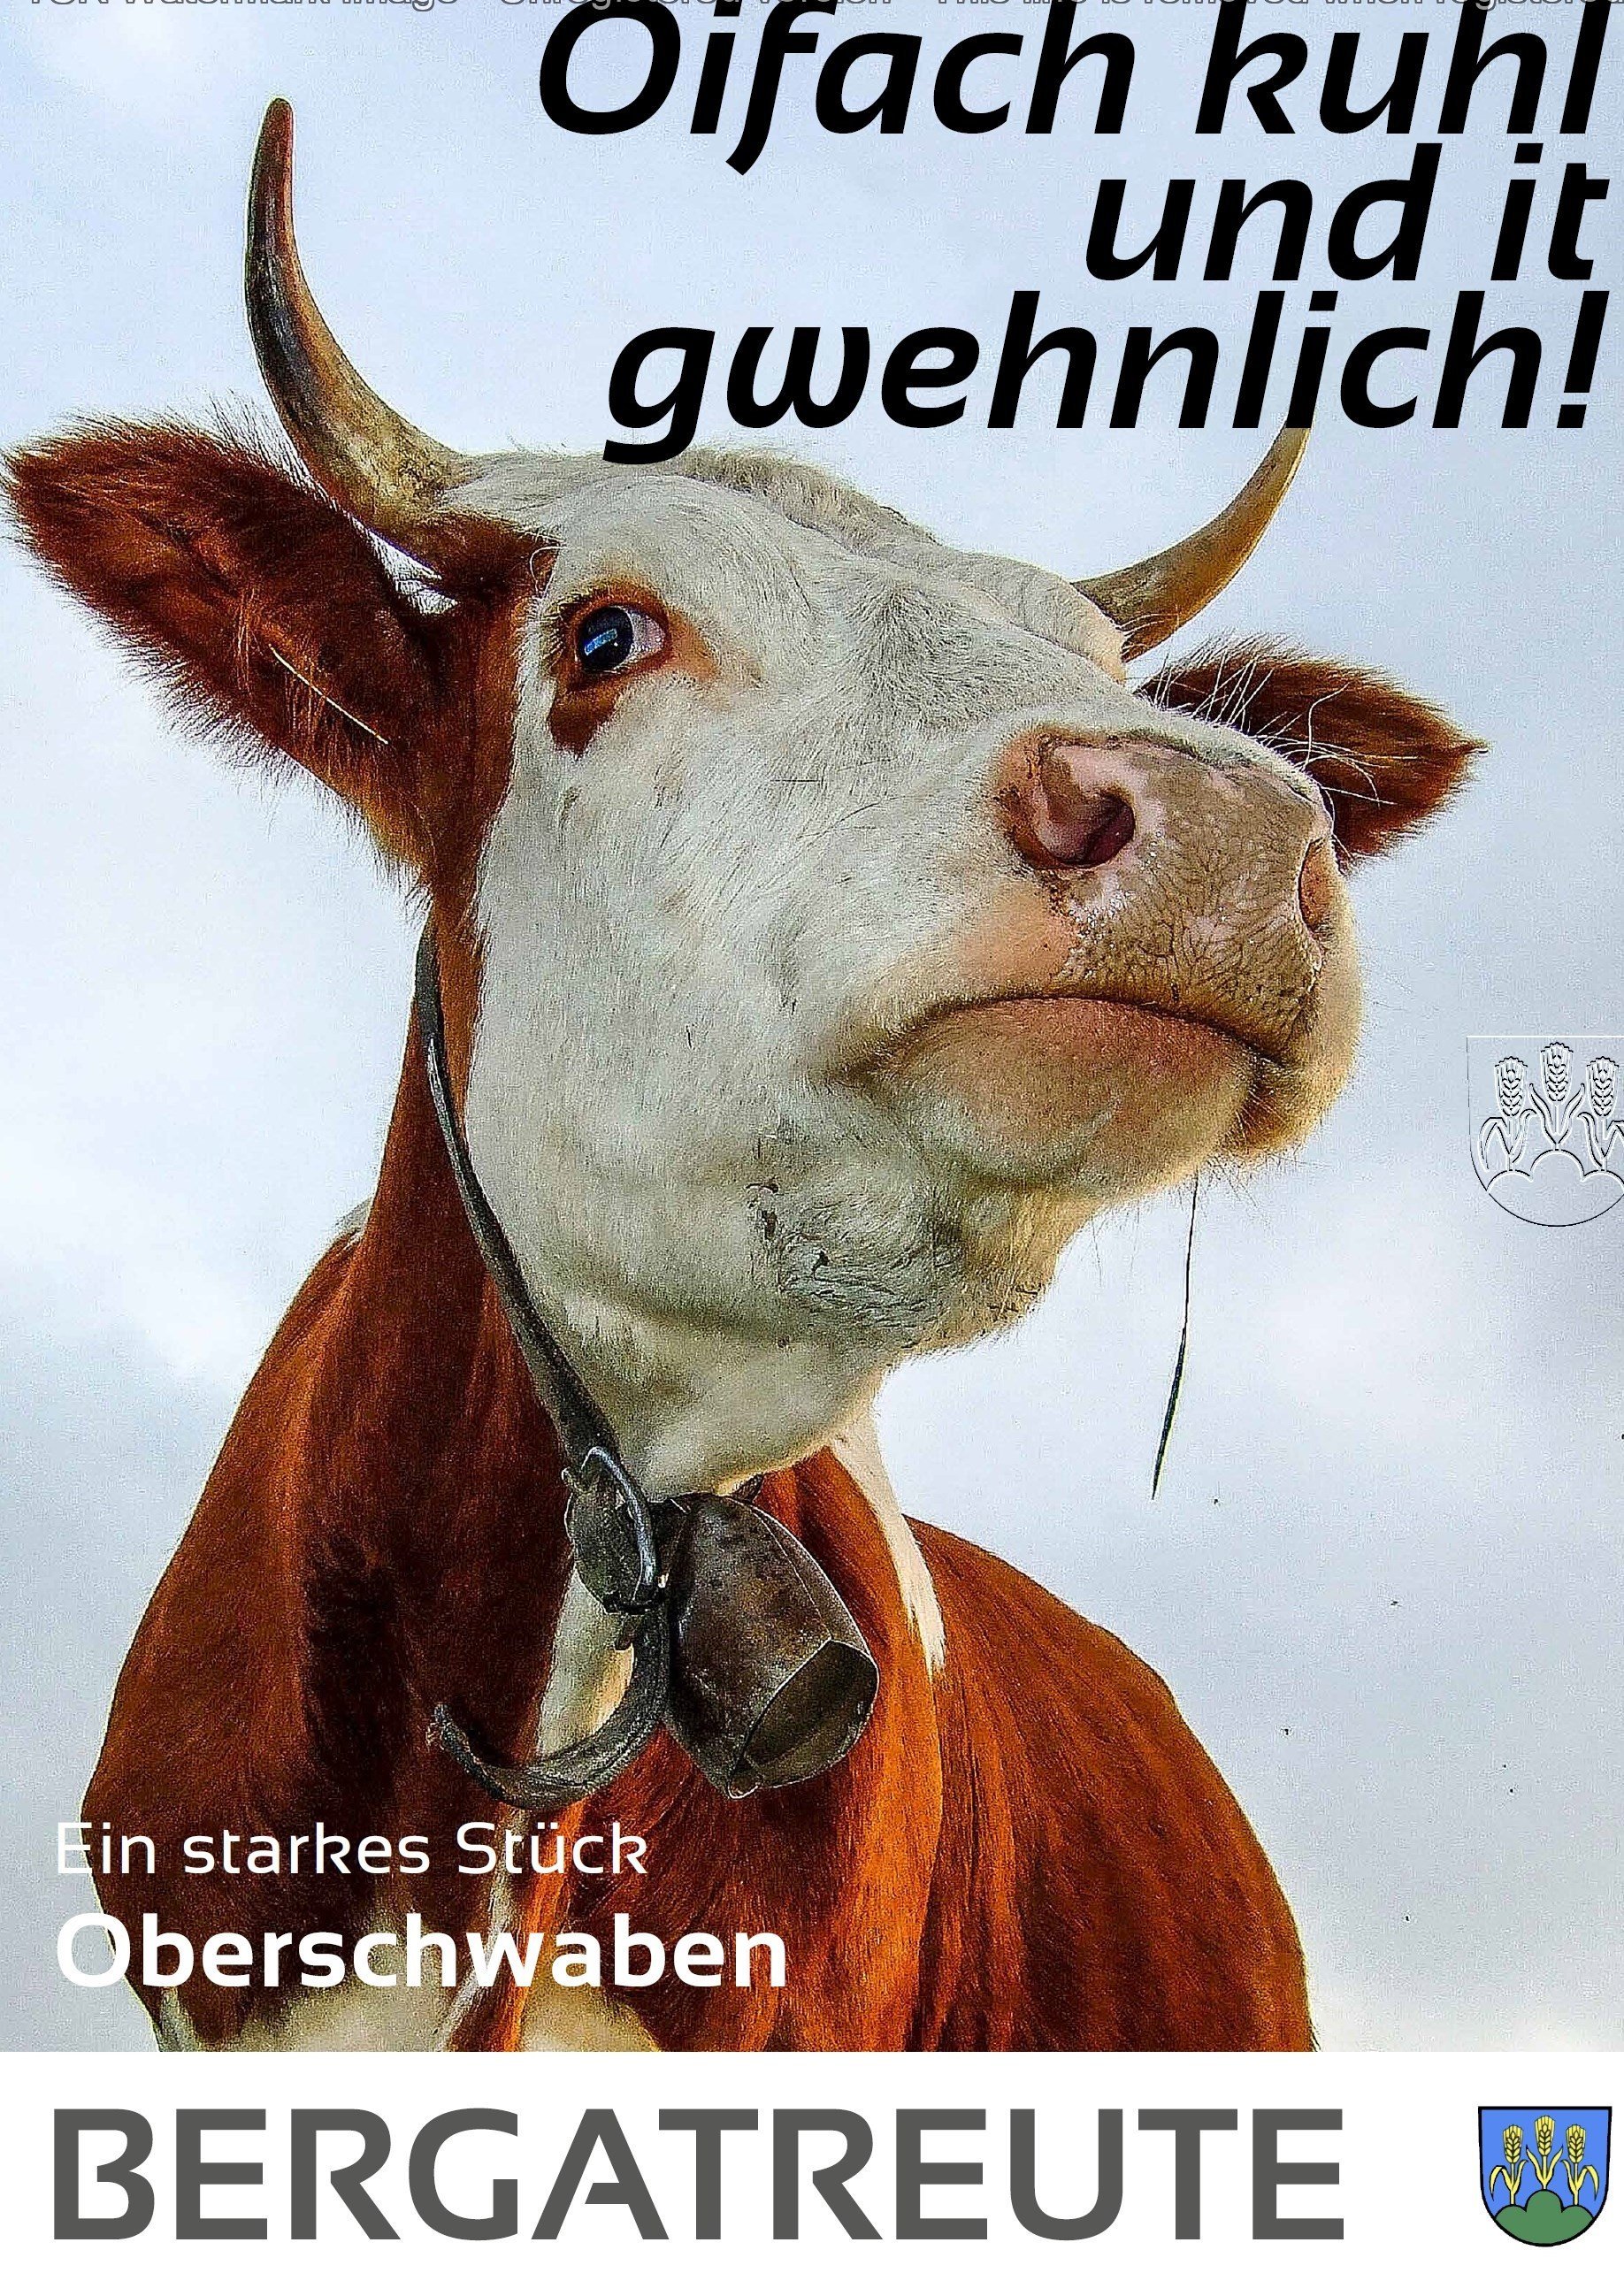  Plakat mit Kuhkopf und Spruch: Oifach kuhl und it gwehnlich! 